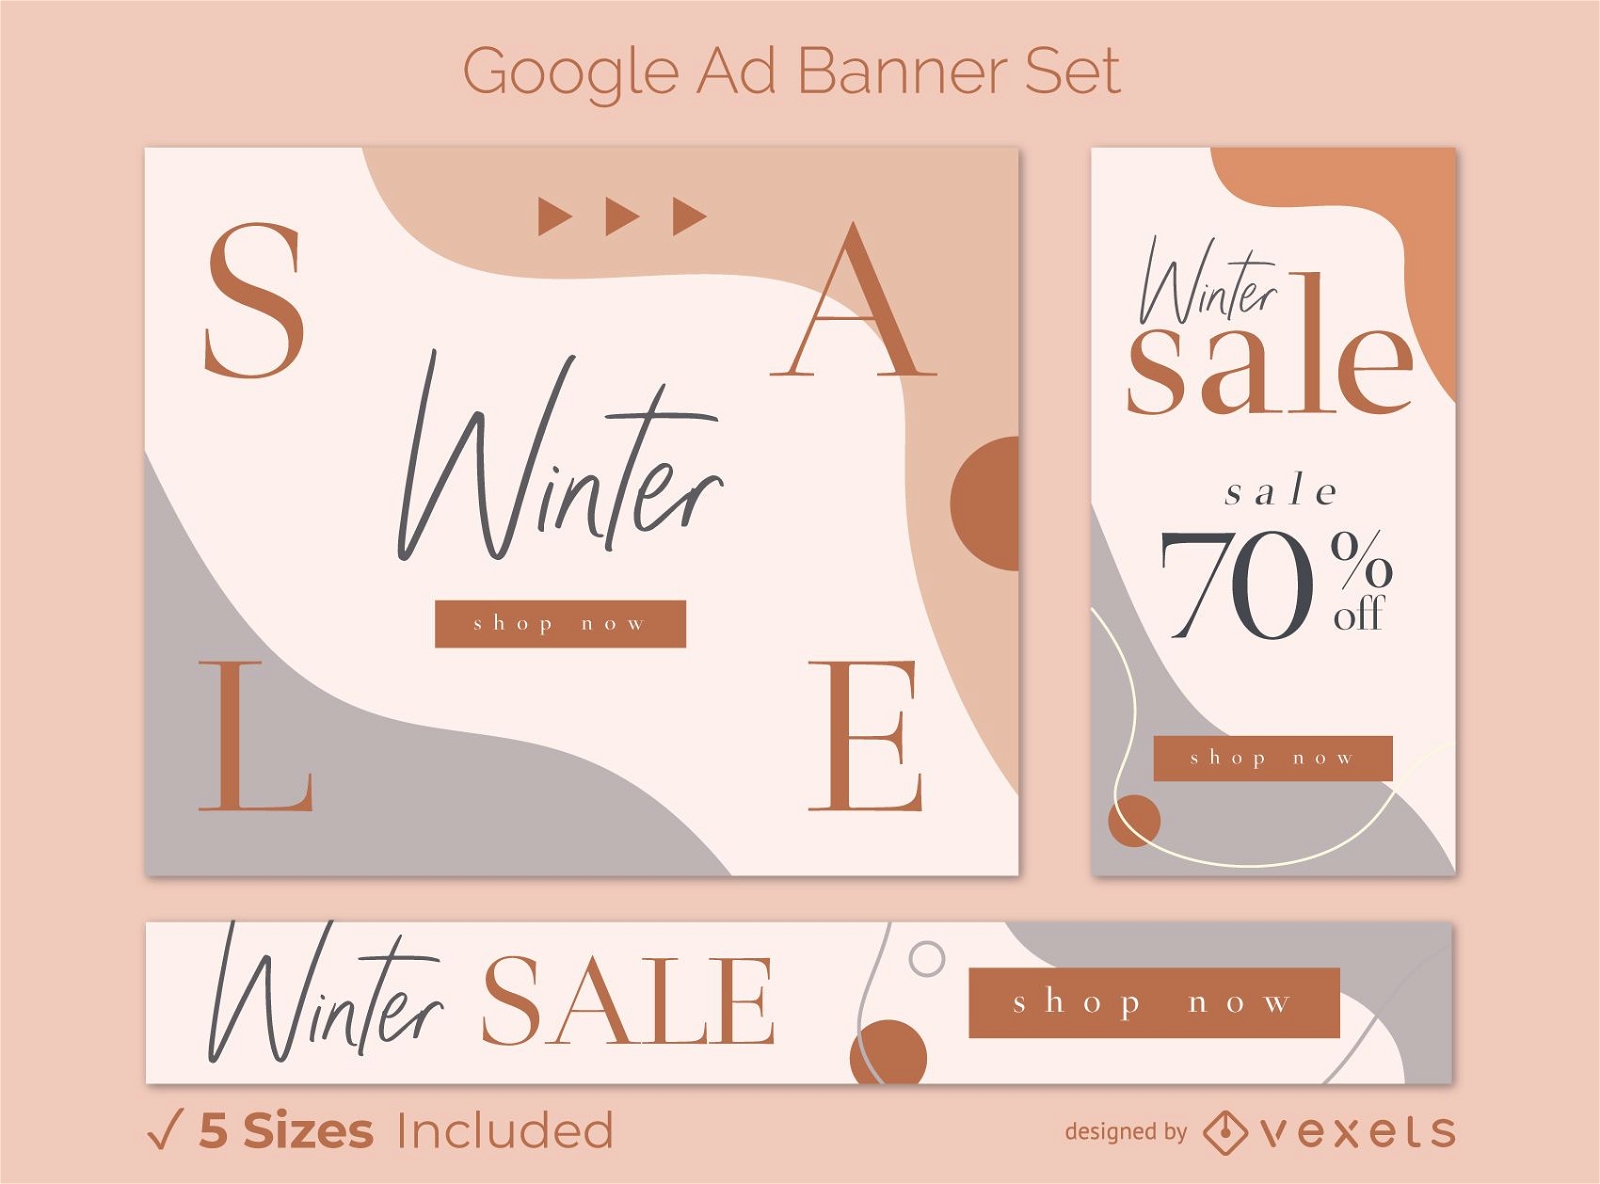 Venta de invierno conjunto de banners publicitarios de Google